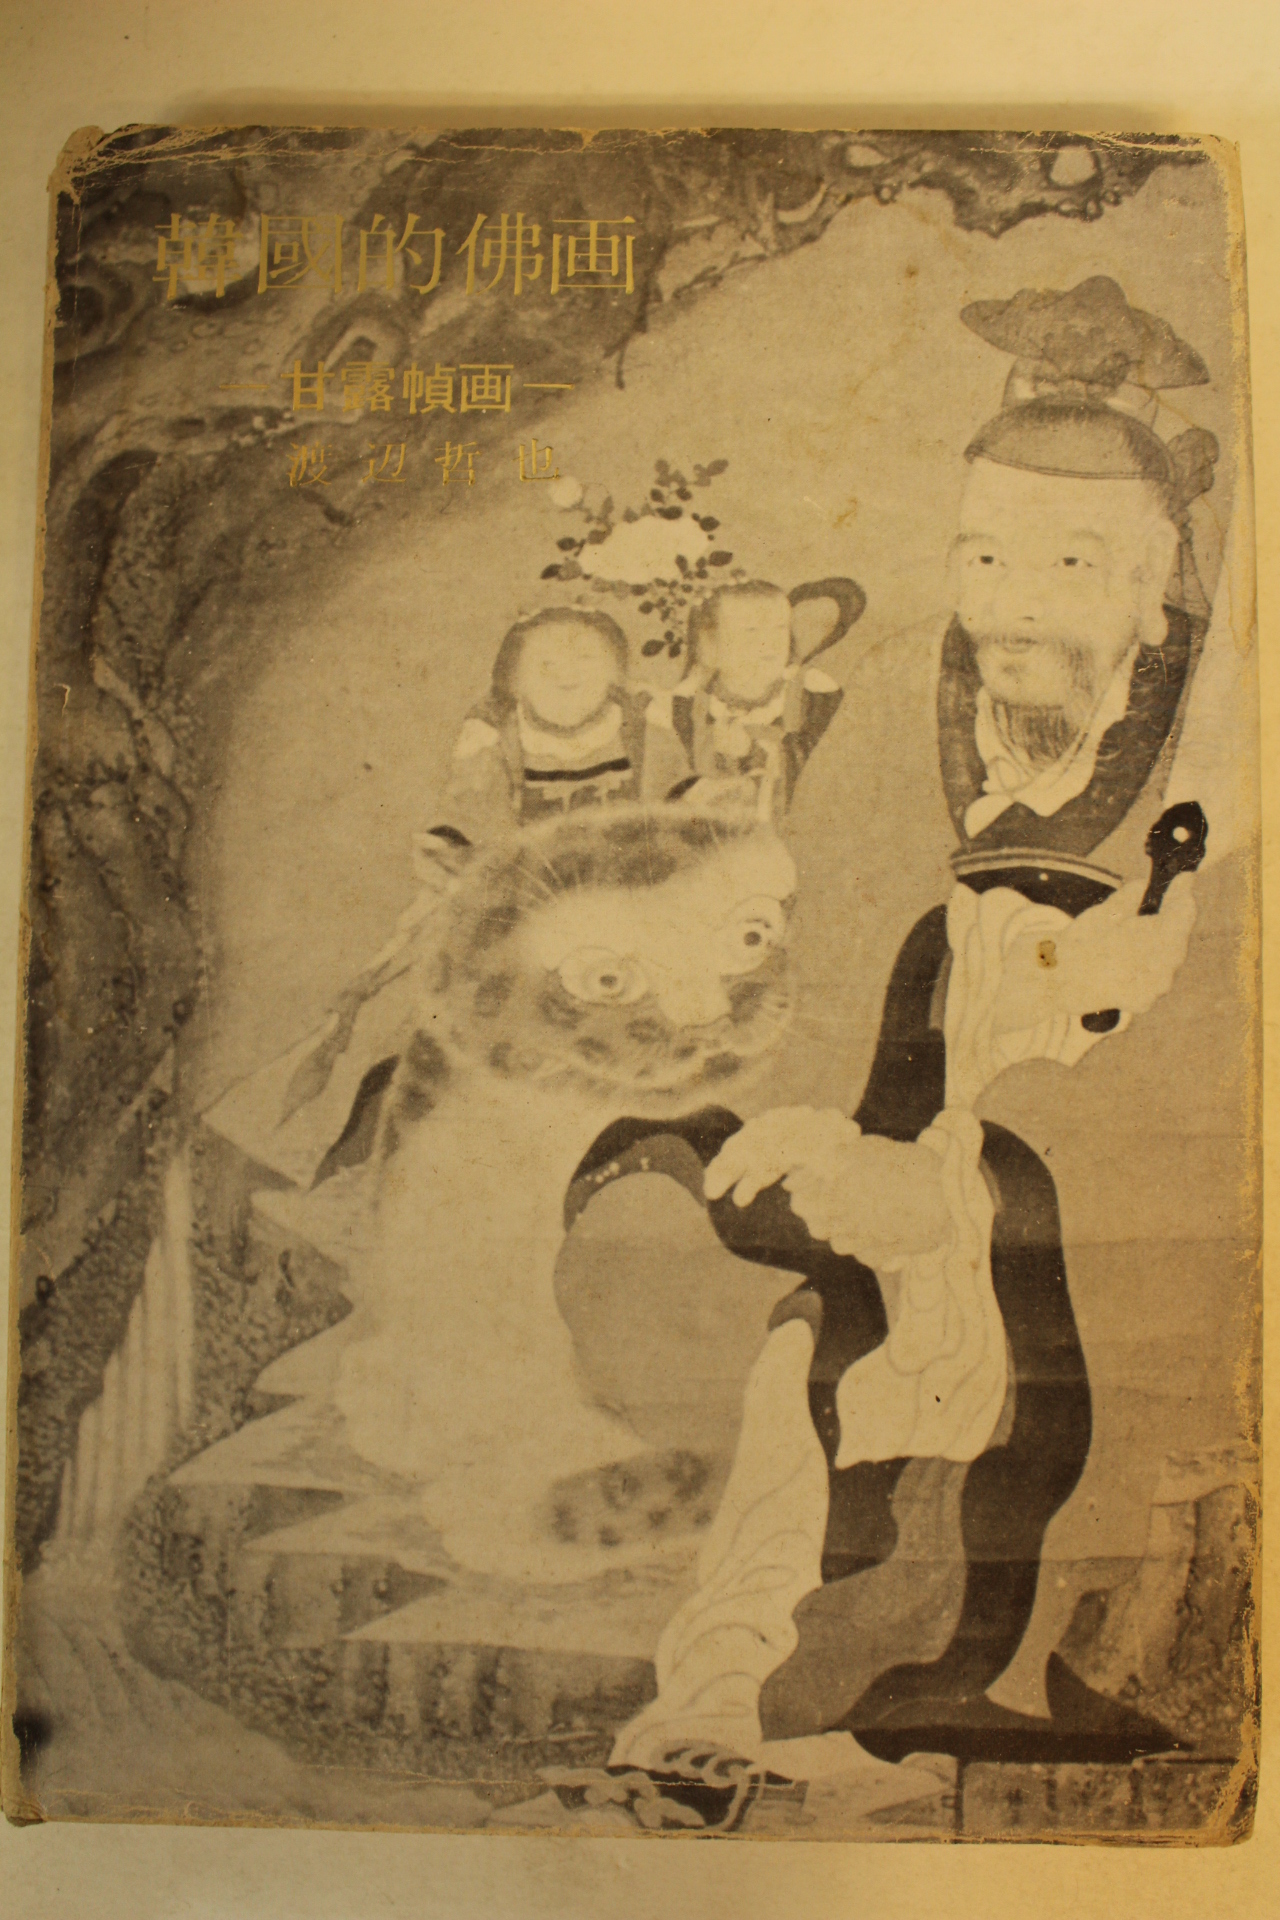 1975년초판 한국적불화(韓國的佛畵) 200부 한정판 비매품